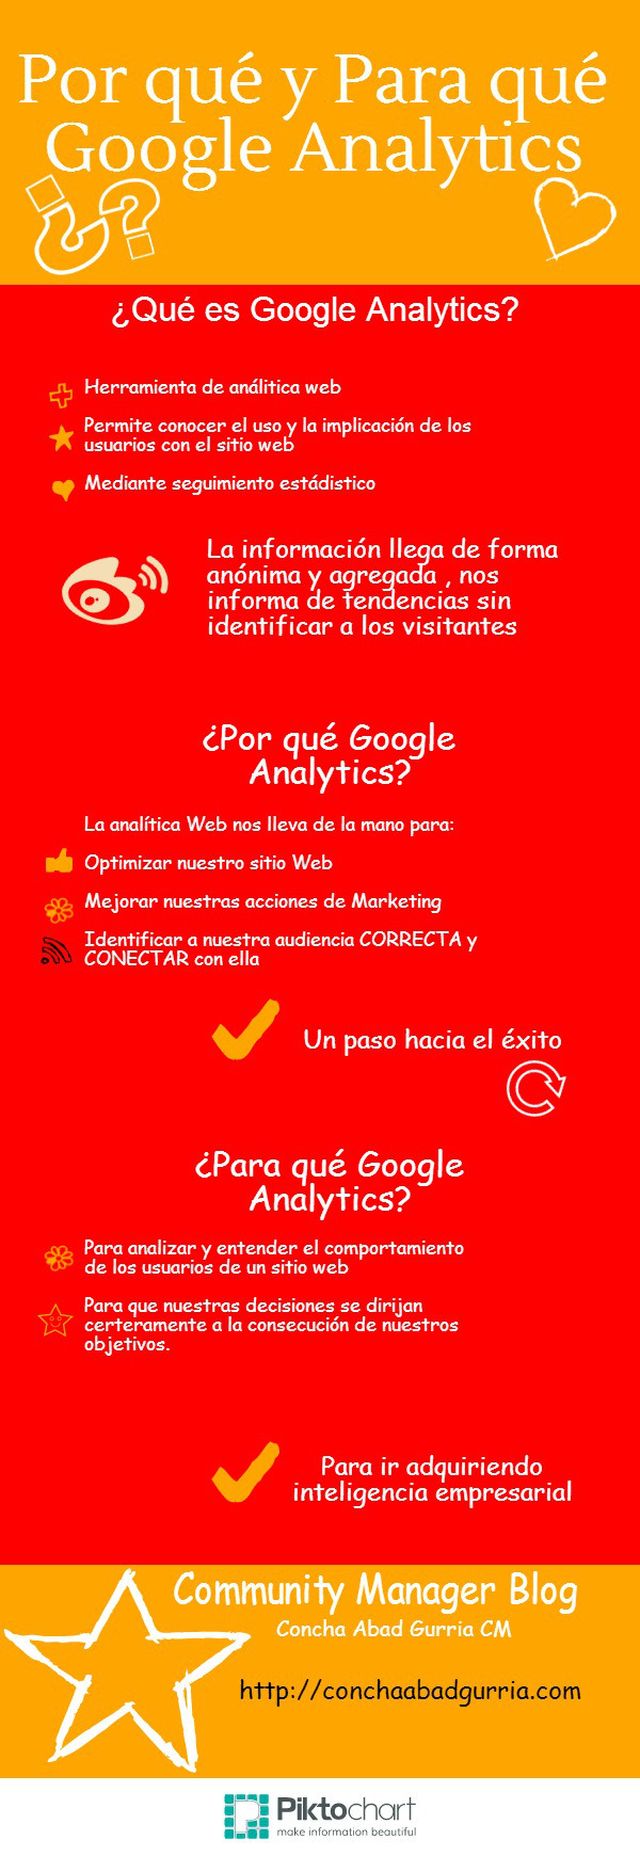 Respuestas a por qué y para qué Google Analytics (infografía)